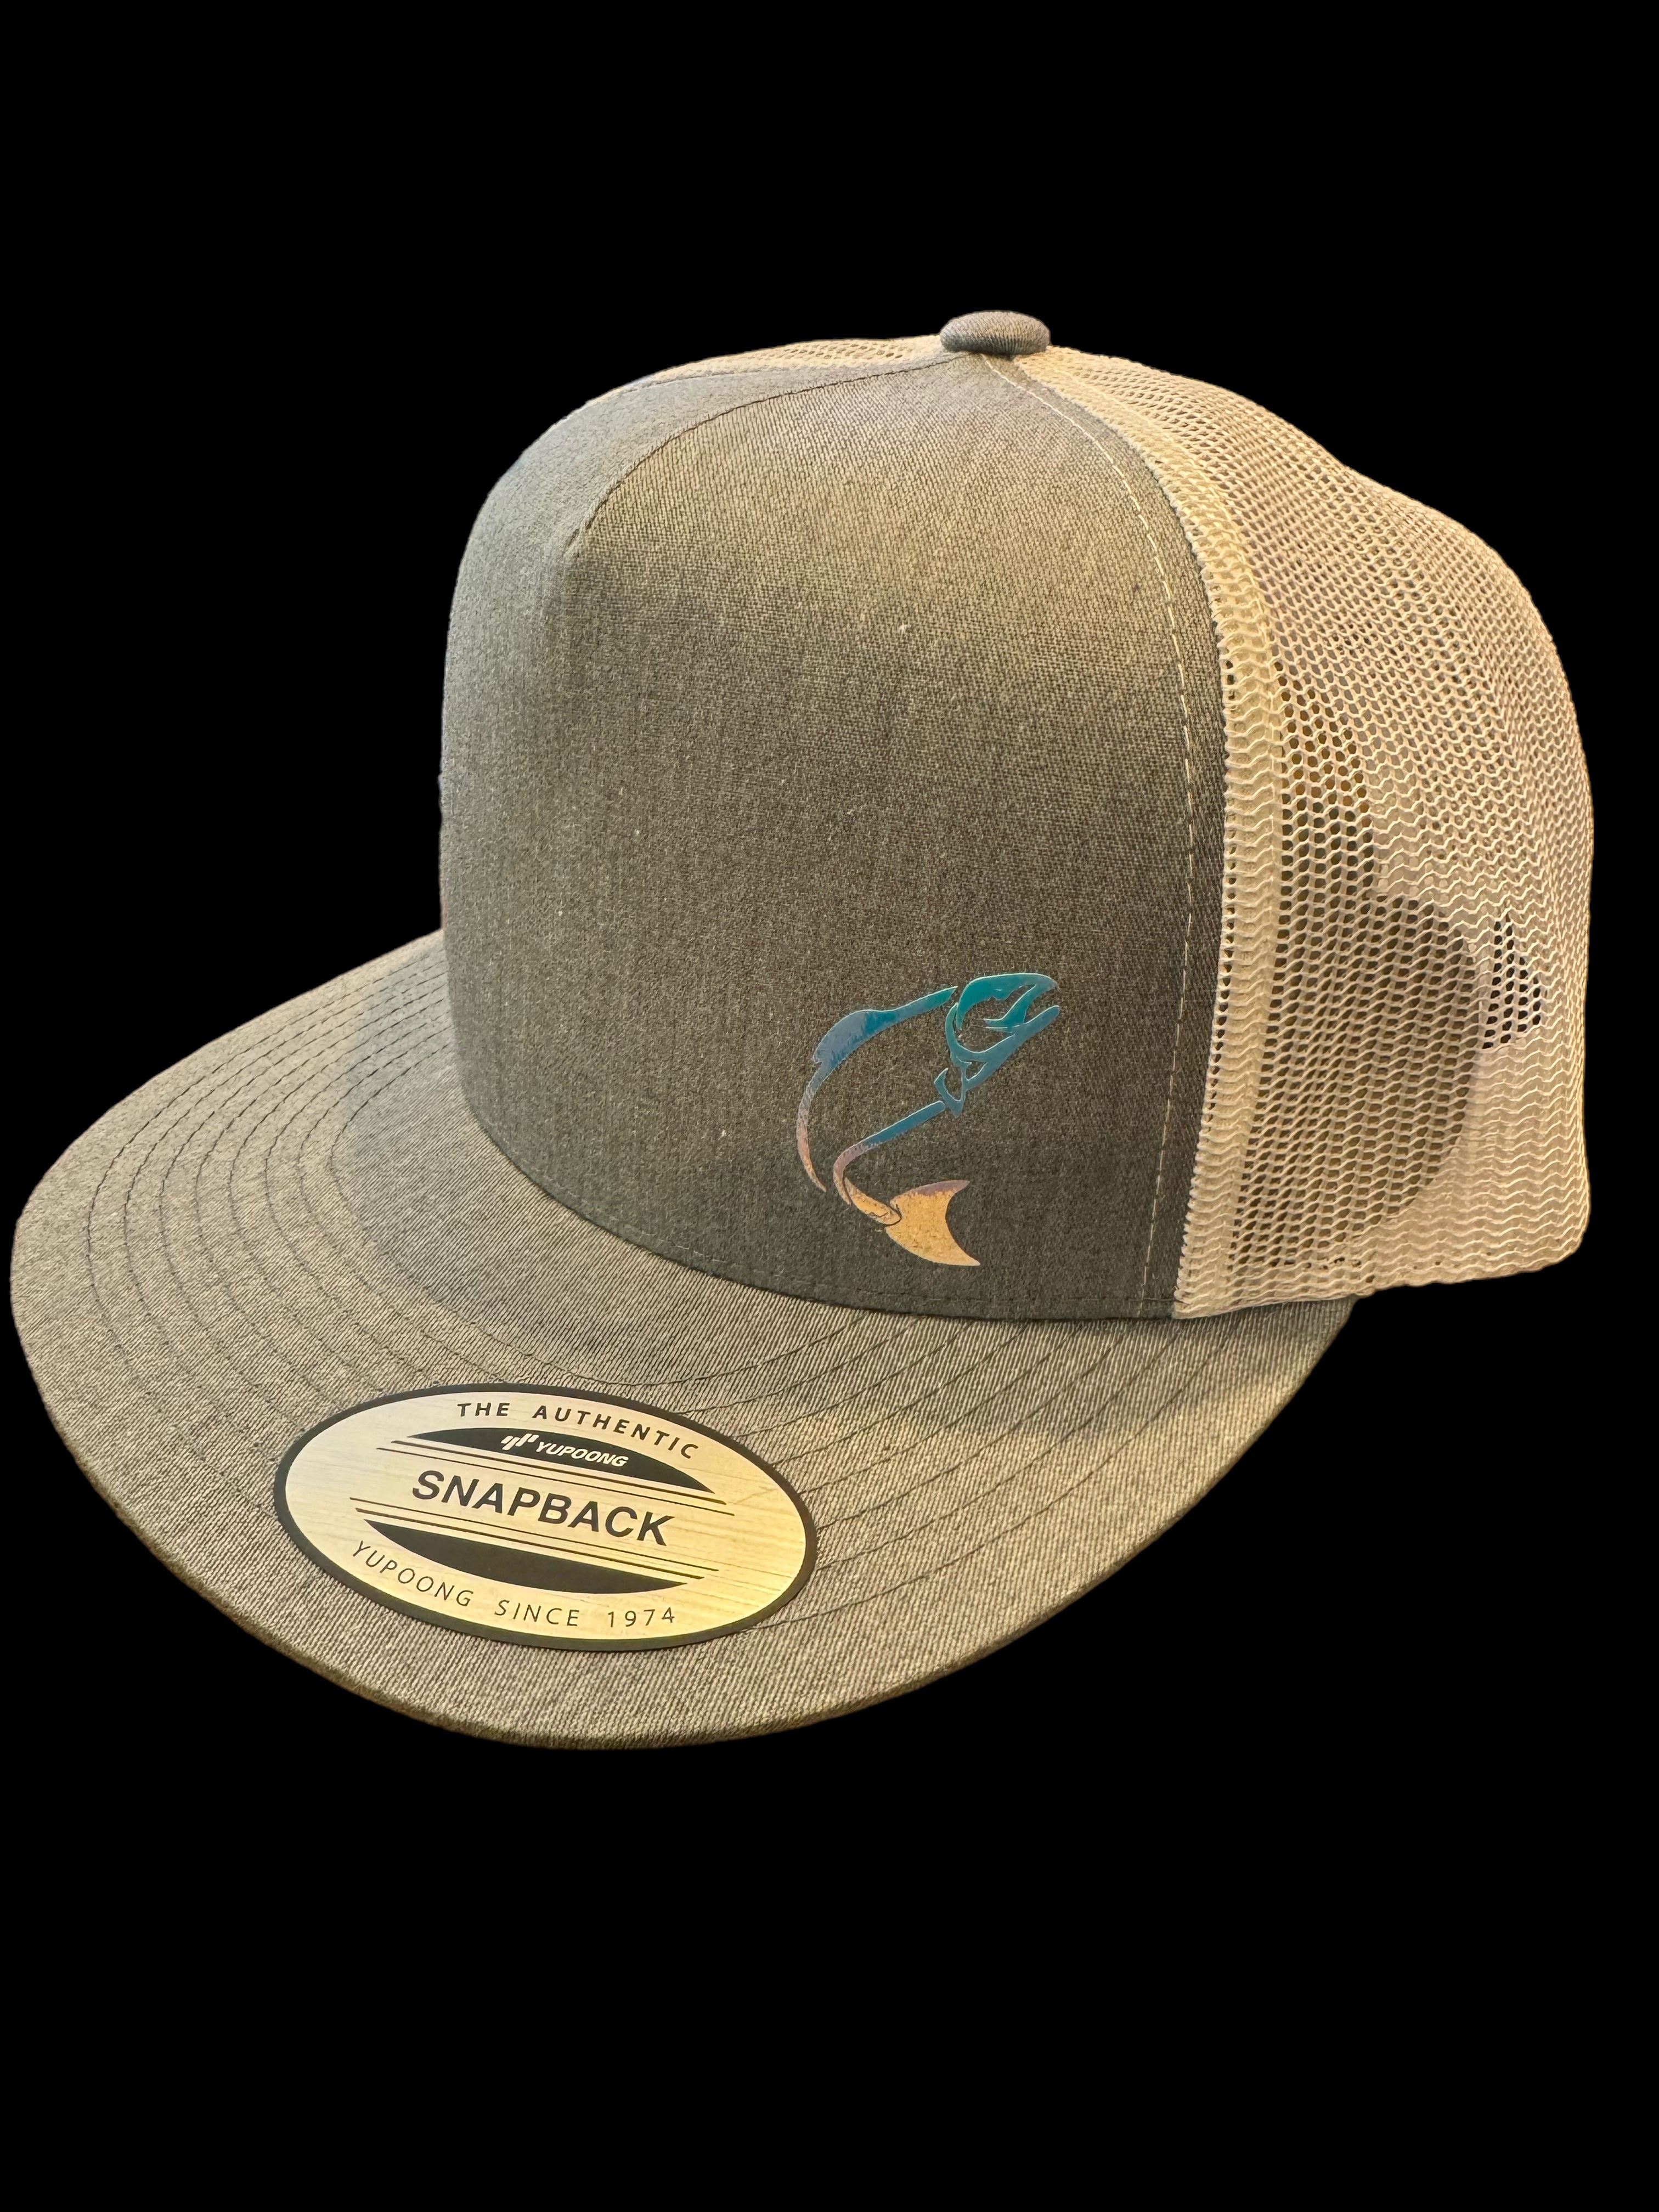 Branded Apparel - Westcoast Moonjelly Glow Trucker Hats